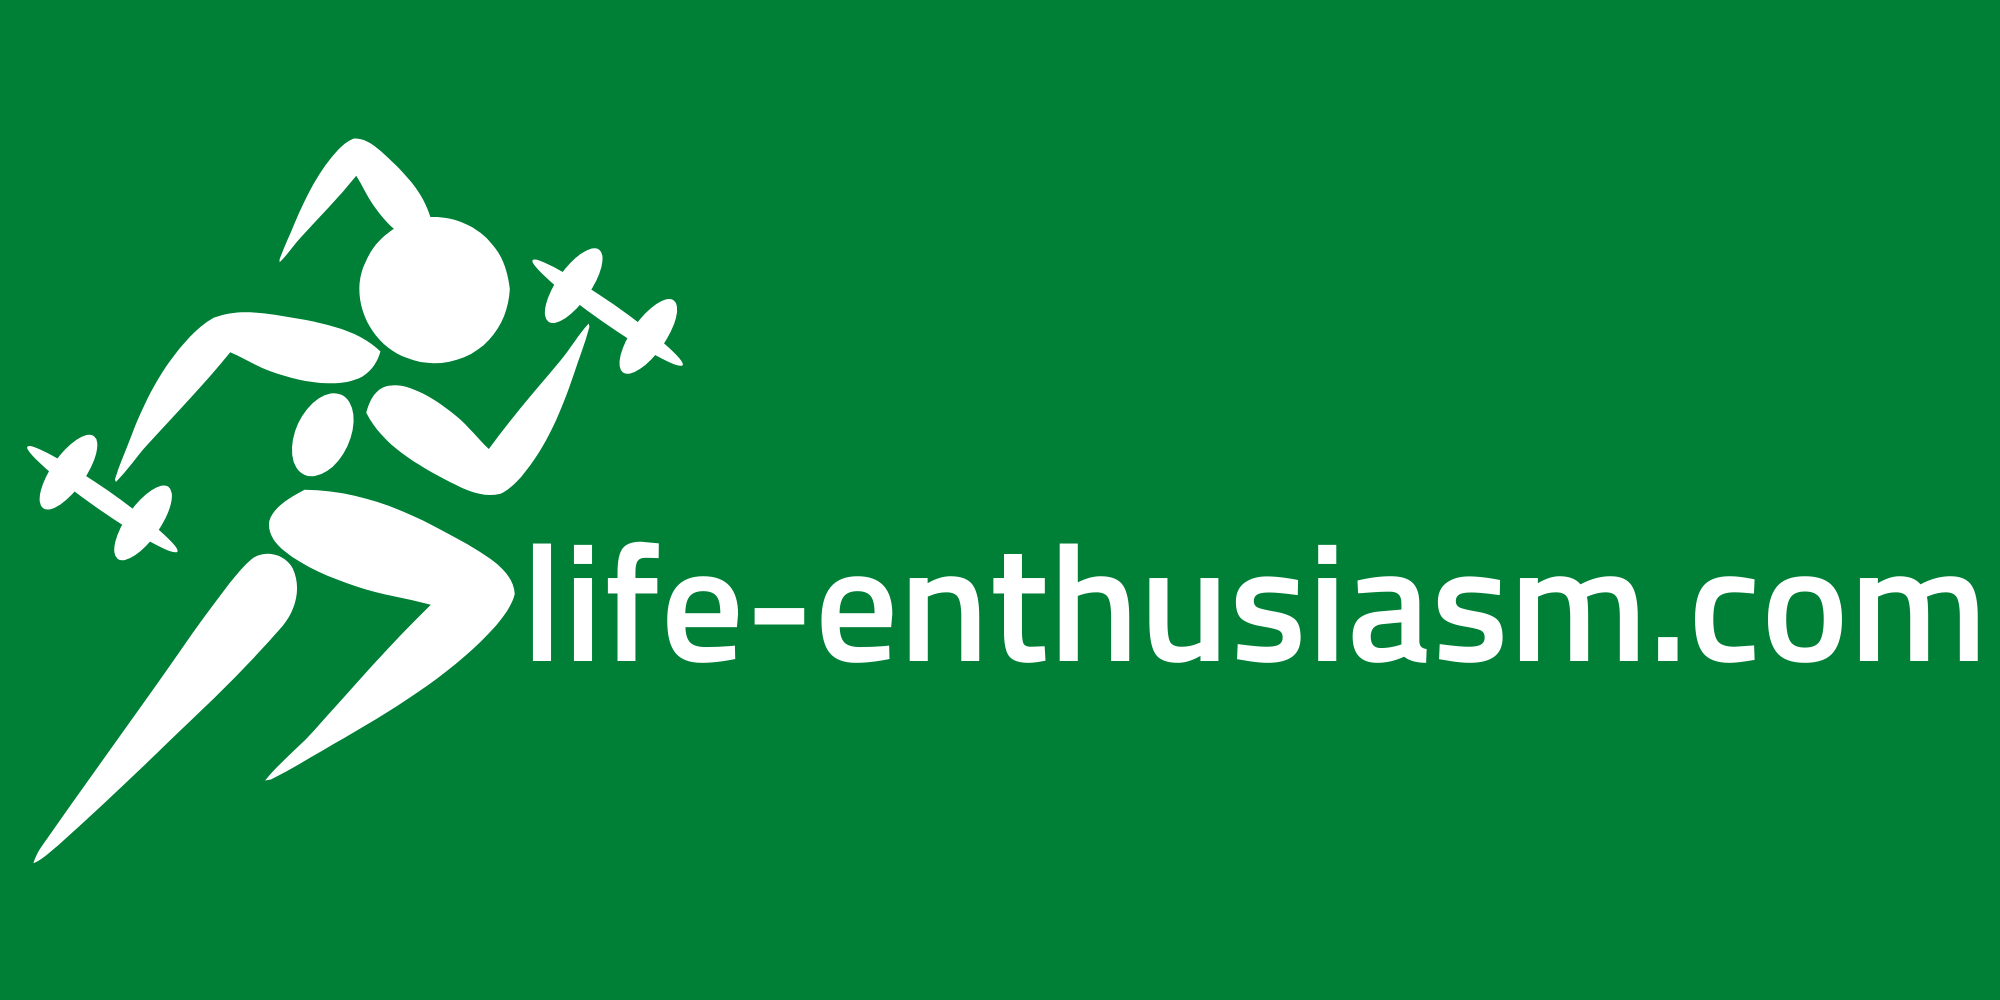 life-enthusiasm.com